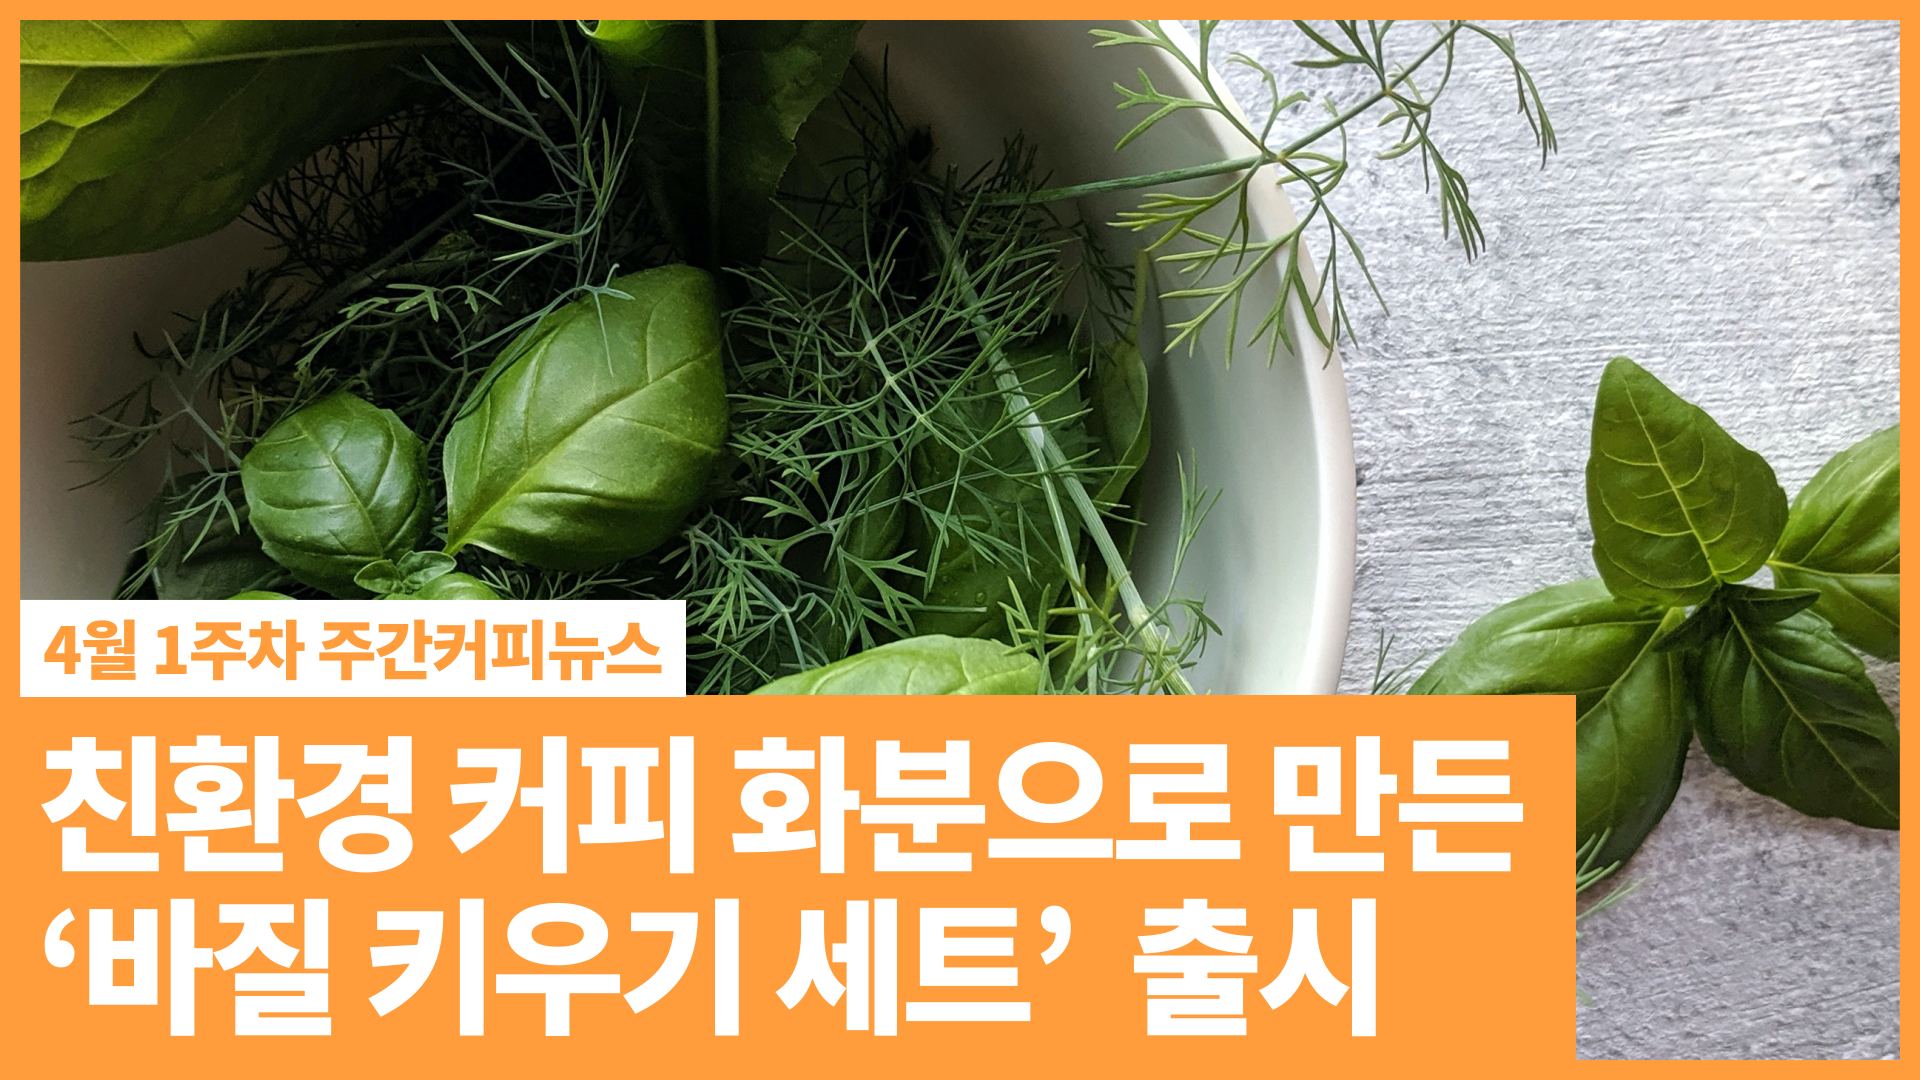 CJ프레시웨이, 친환경 커피 화분으로 만든 '바질 키우기 세트' 출시 | 4월 1주차 주간커피뉴스